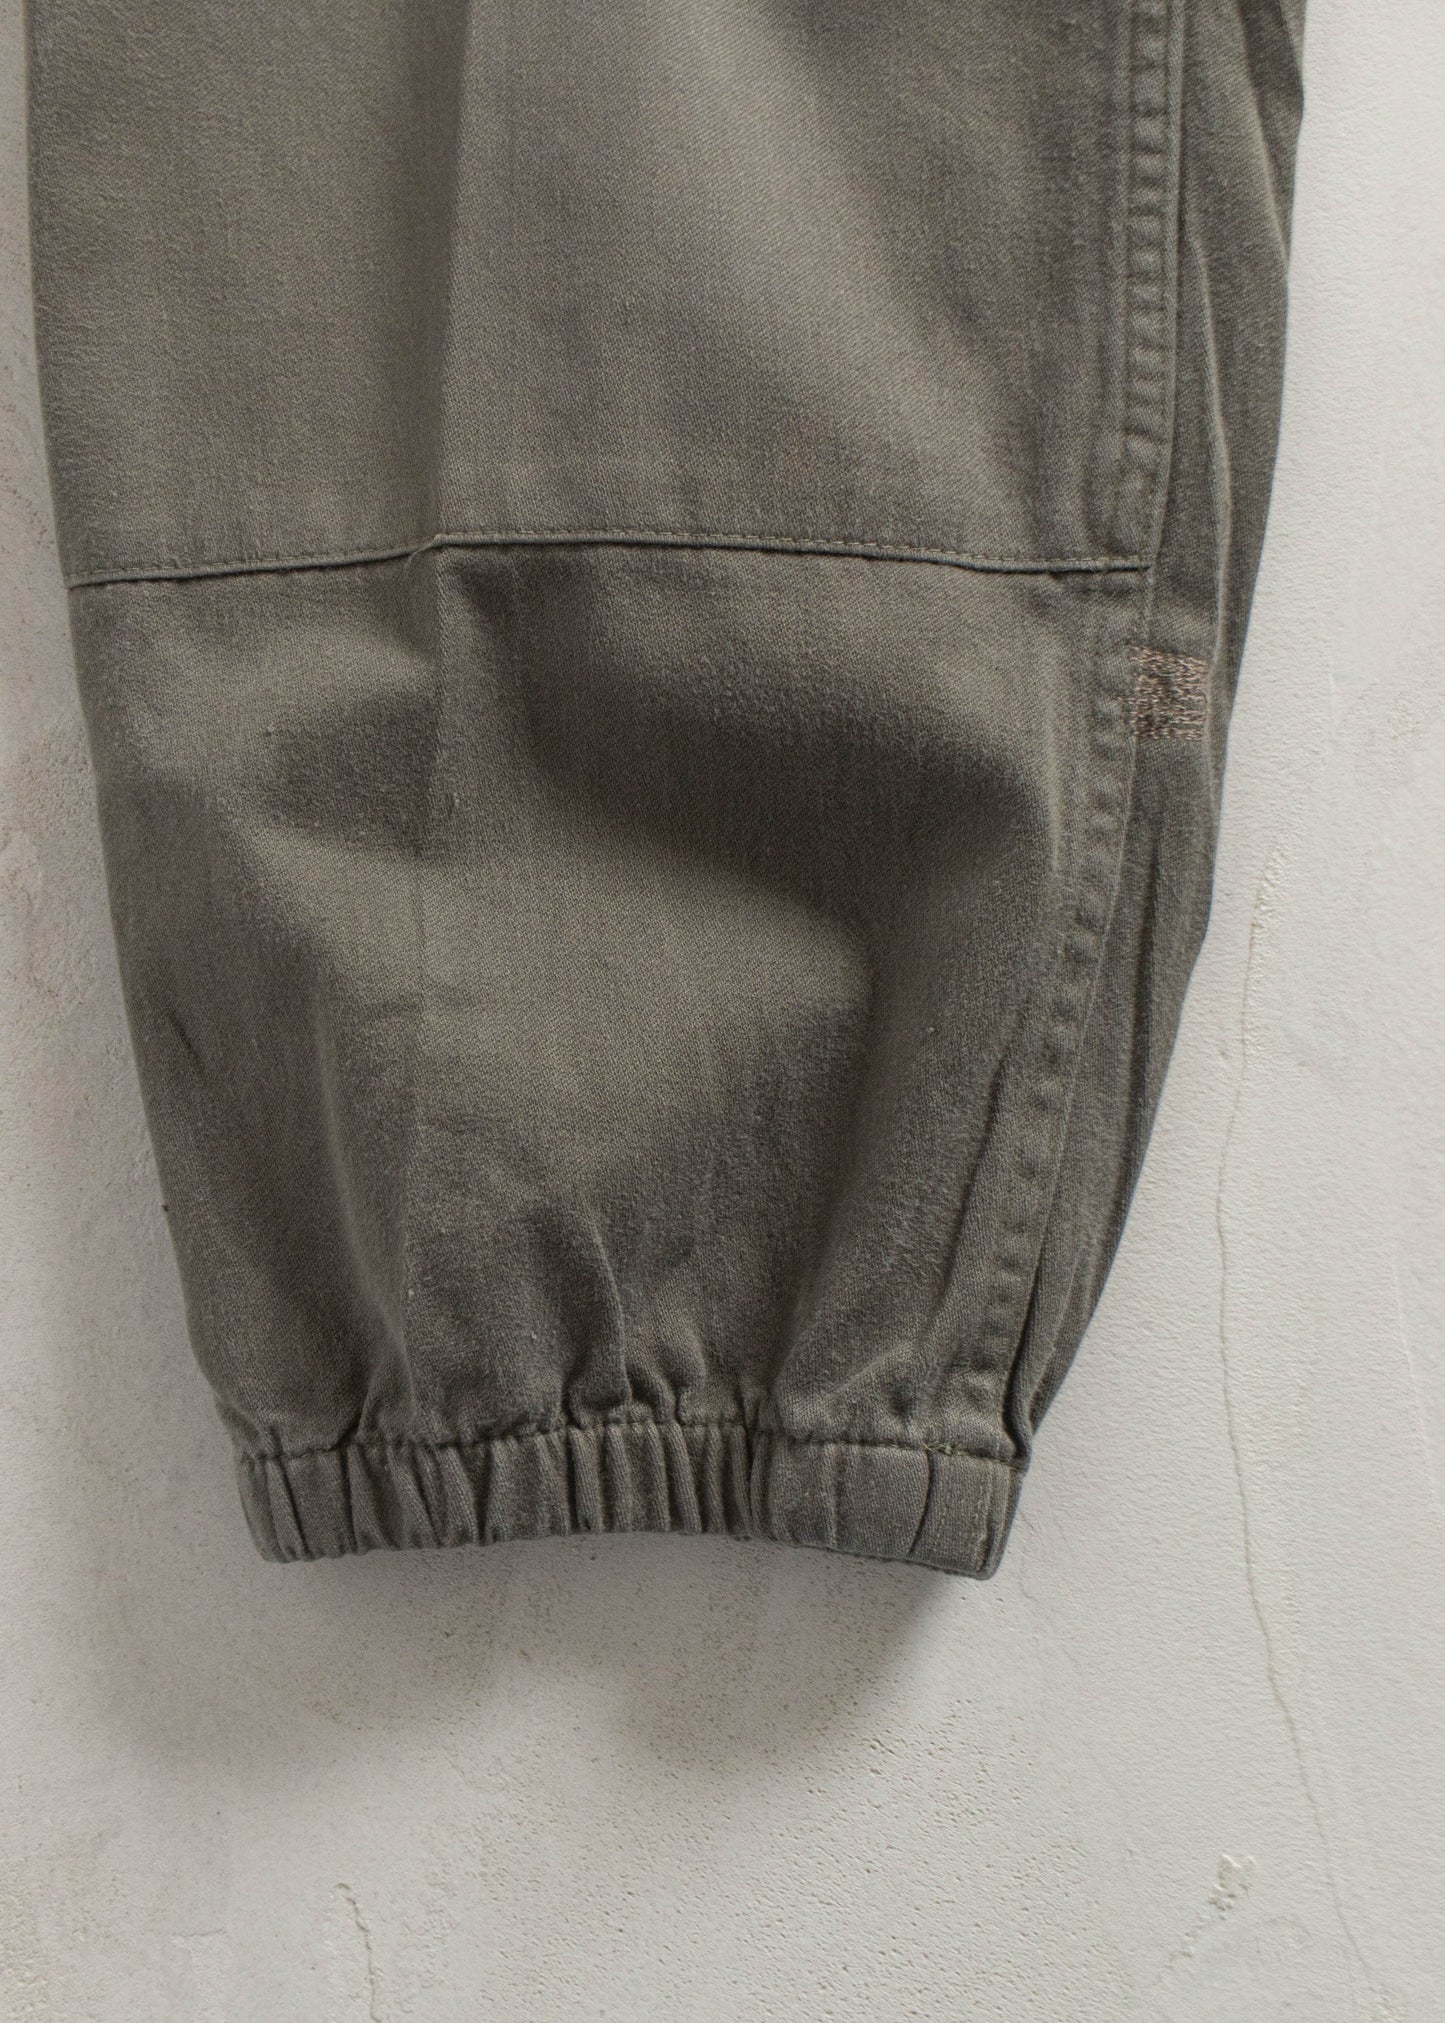 Vintage 1980s Paul Boyé French Military Cargo Pants Size Women's 28 Men's 31